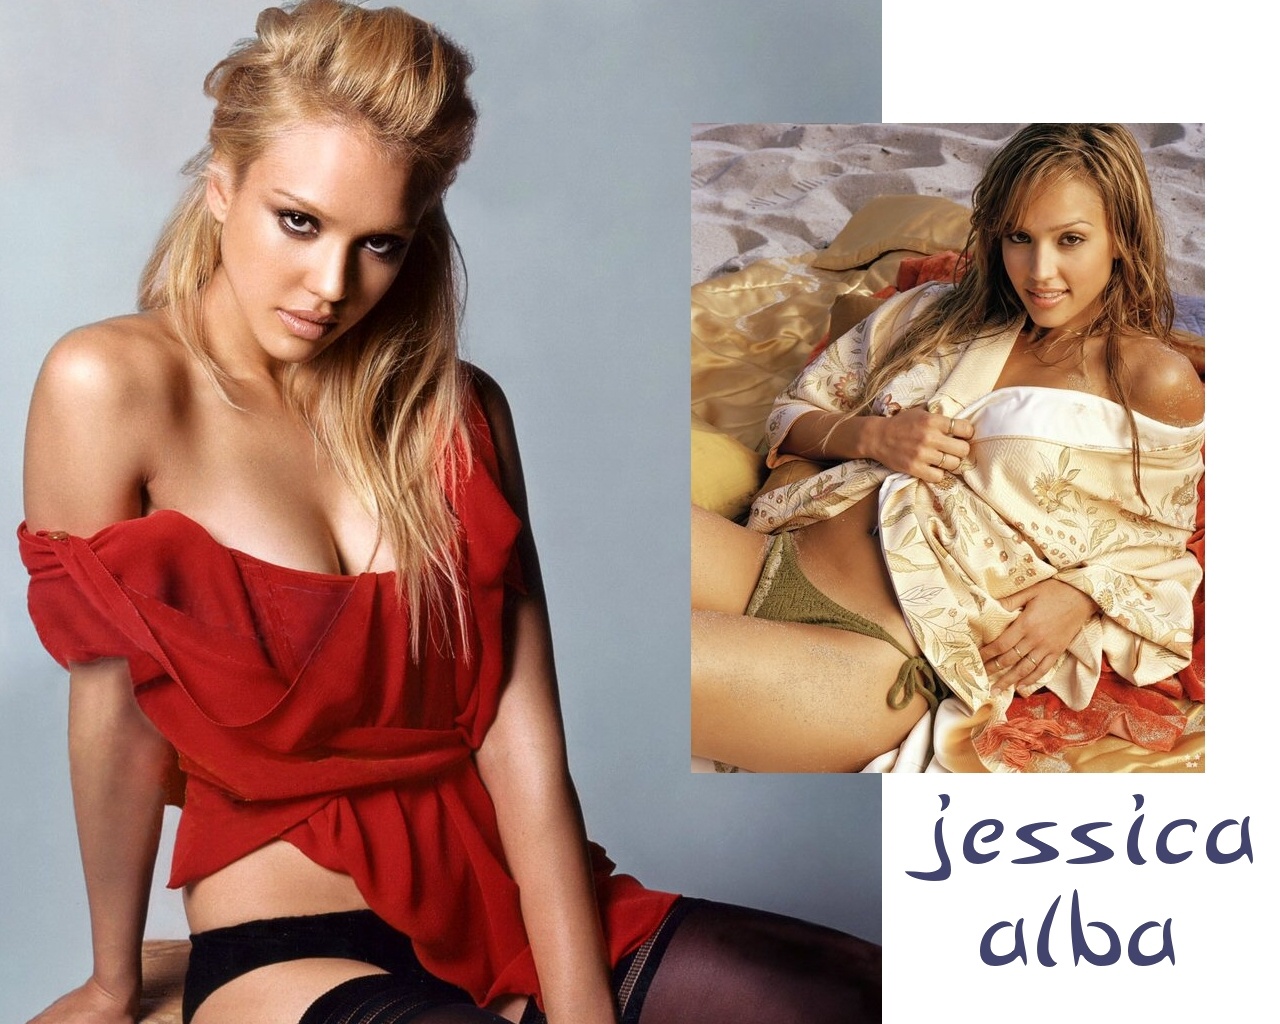 Jessica alba 167